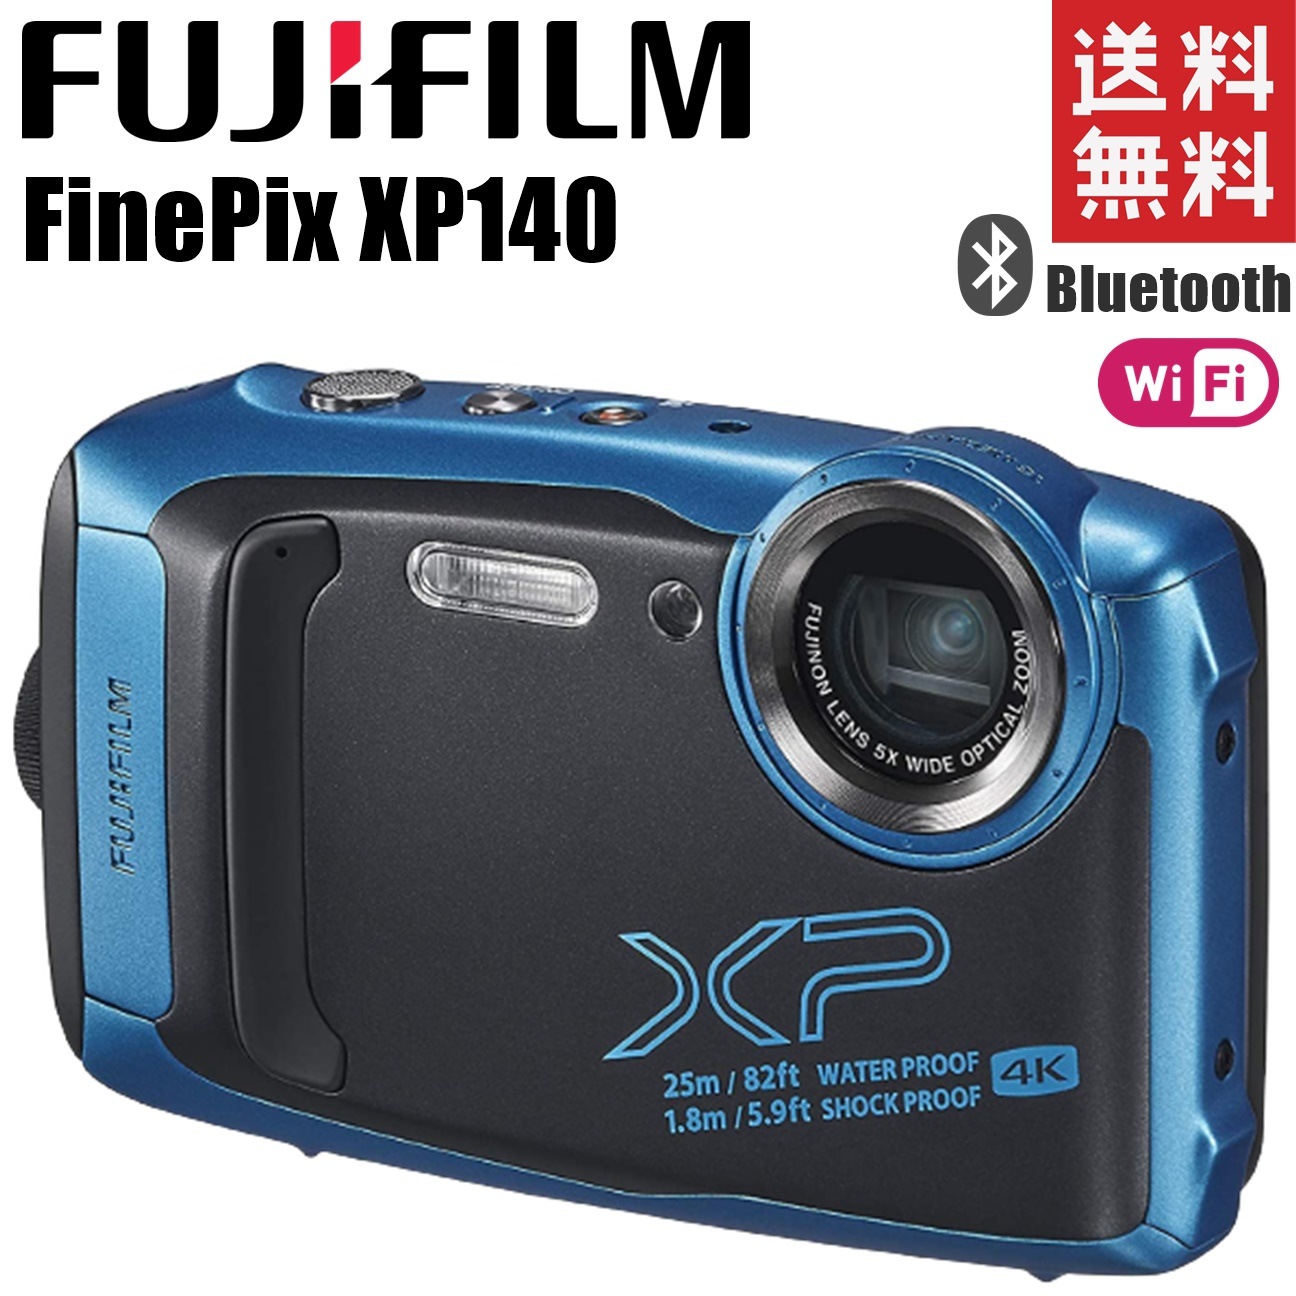 ファインピックスフジフィルム XP140 ファインピックス スカイブルー 防水デジタルカメラ 中古